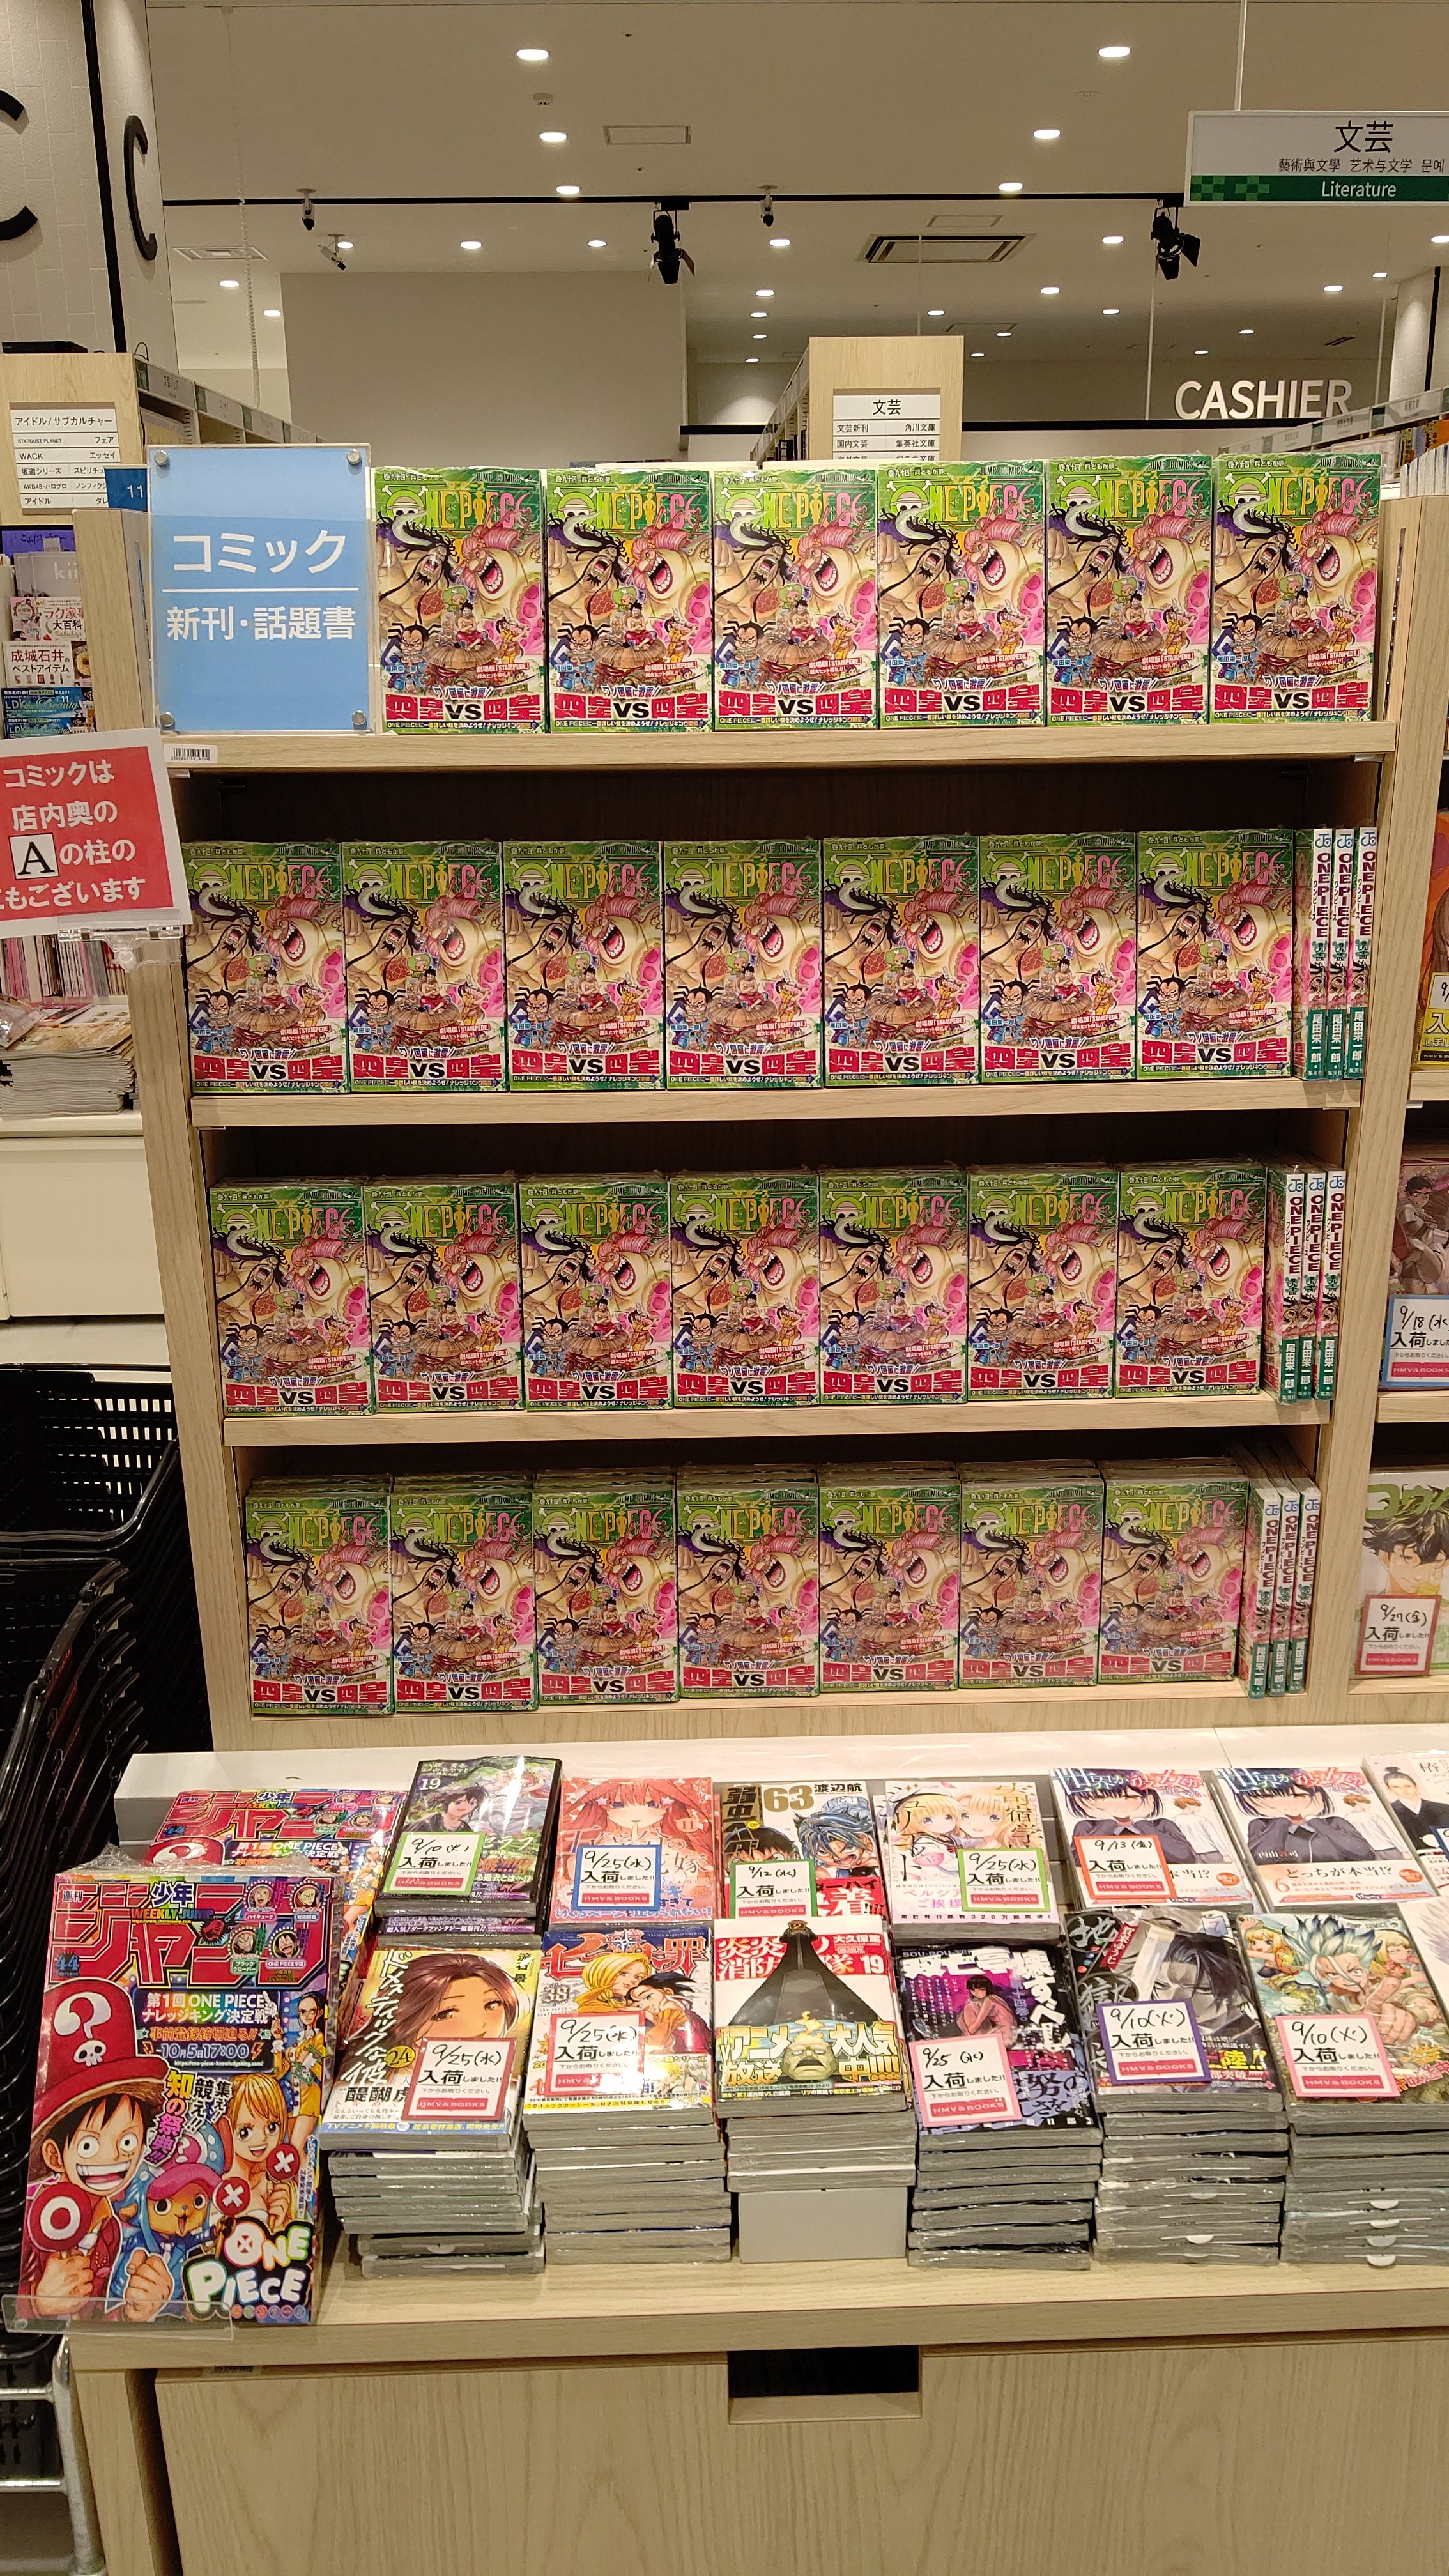 Hmv Books Okinawa 10 7 コミック新刊 お待たせしました One Piece 94巻入荷いたしました 入口のコミック新刊コーナー コミック売り場のジャンプ新刊コーナーにて展開中です その他にも 最強ジャンプ 11月号や ジャンプsq 11月号等の